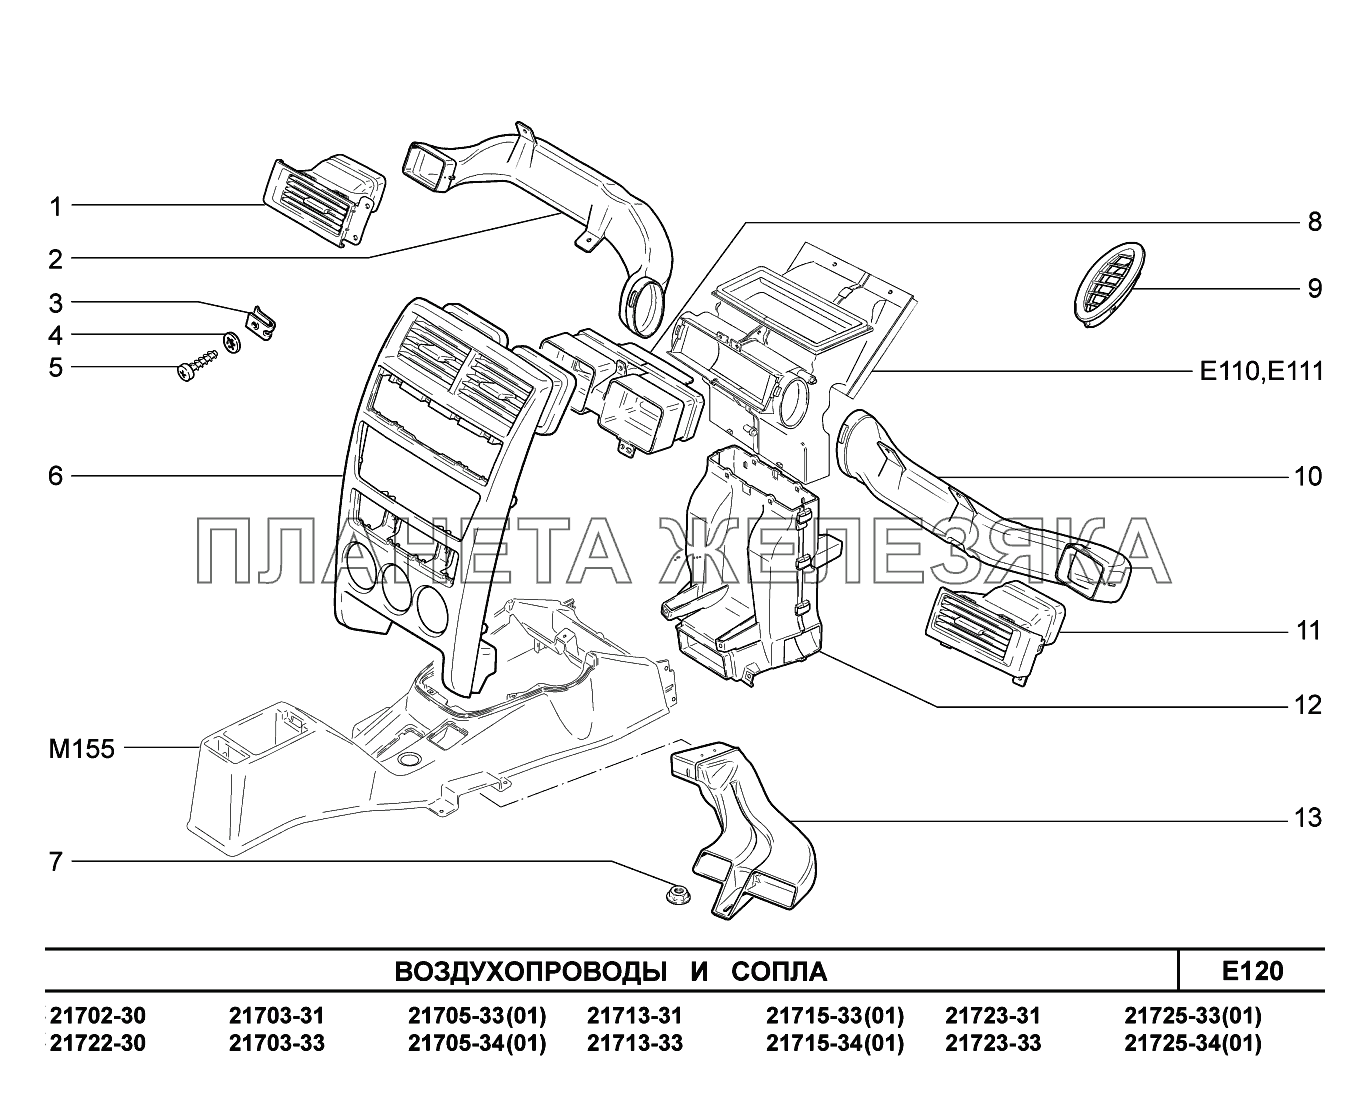 E120. Воздухопроводы и сопла ВАЗ-2170 